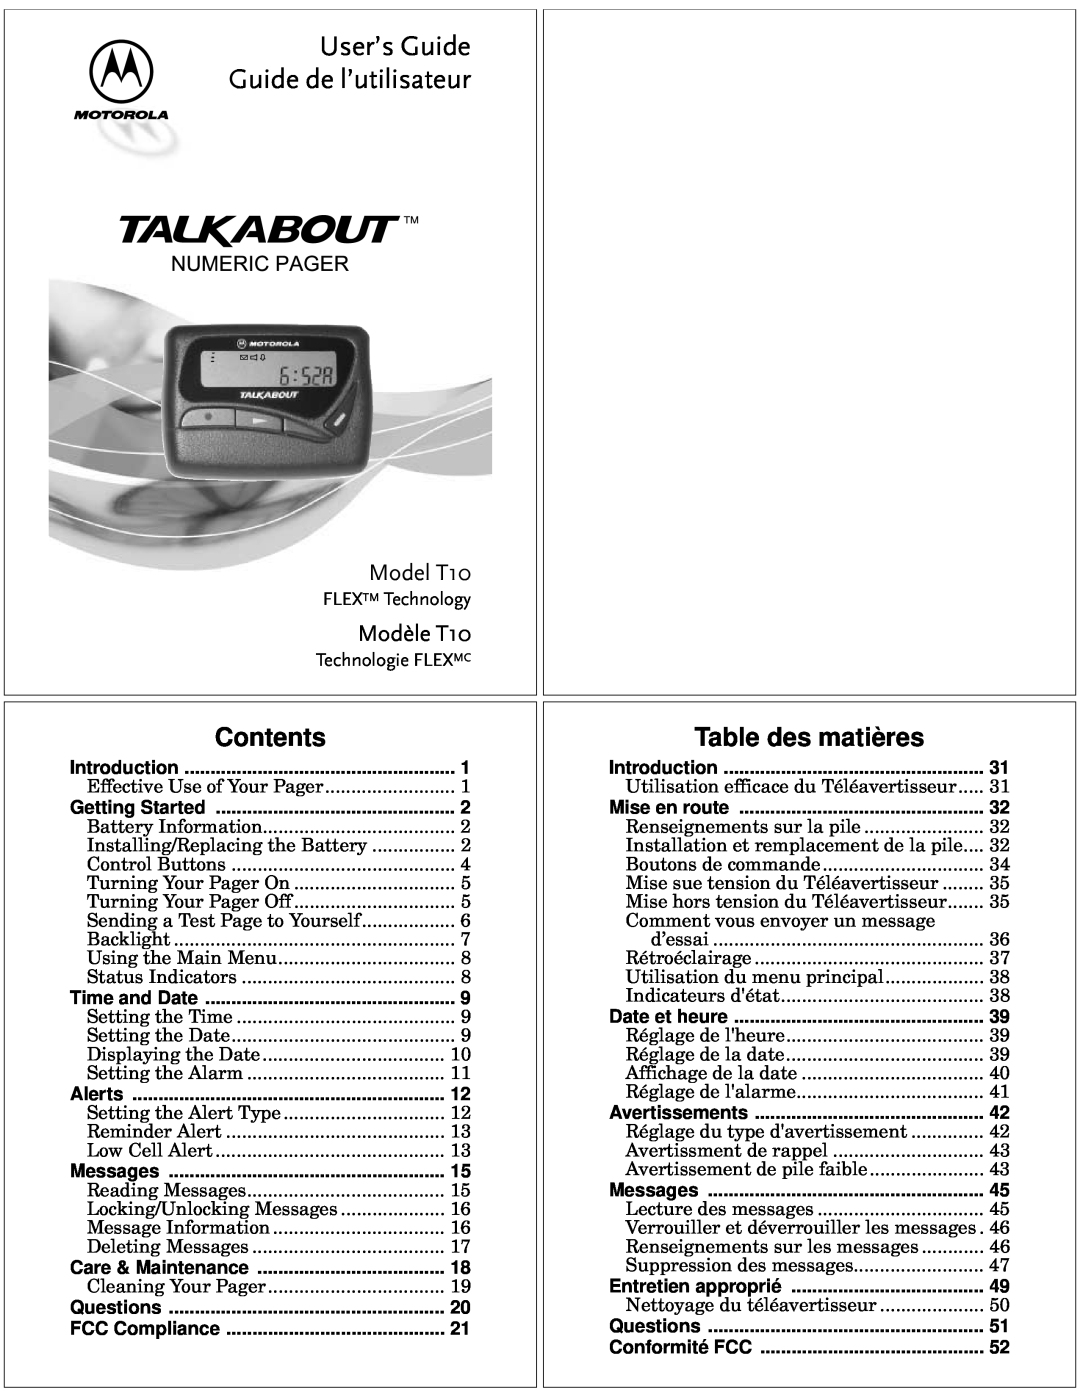 Motorola manual Contents, Table des matières, Numericpager, User’s Guide Guide de l’utilisateur, Modèle T10, Model T10 